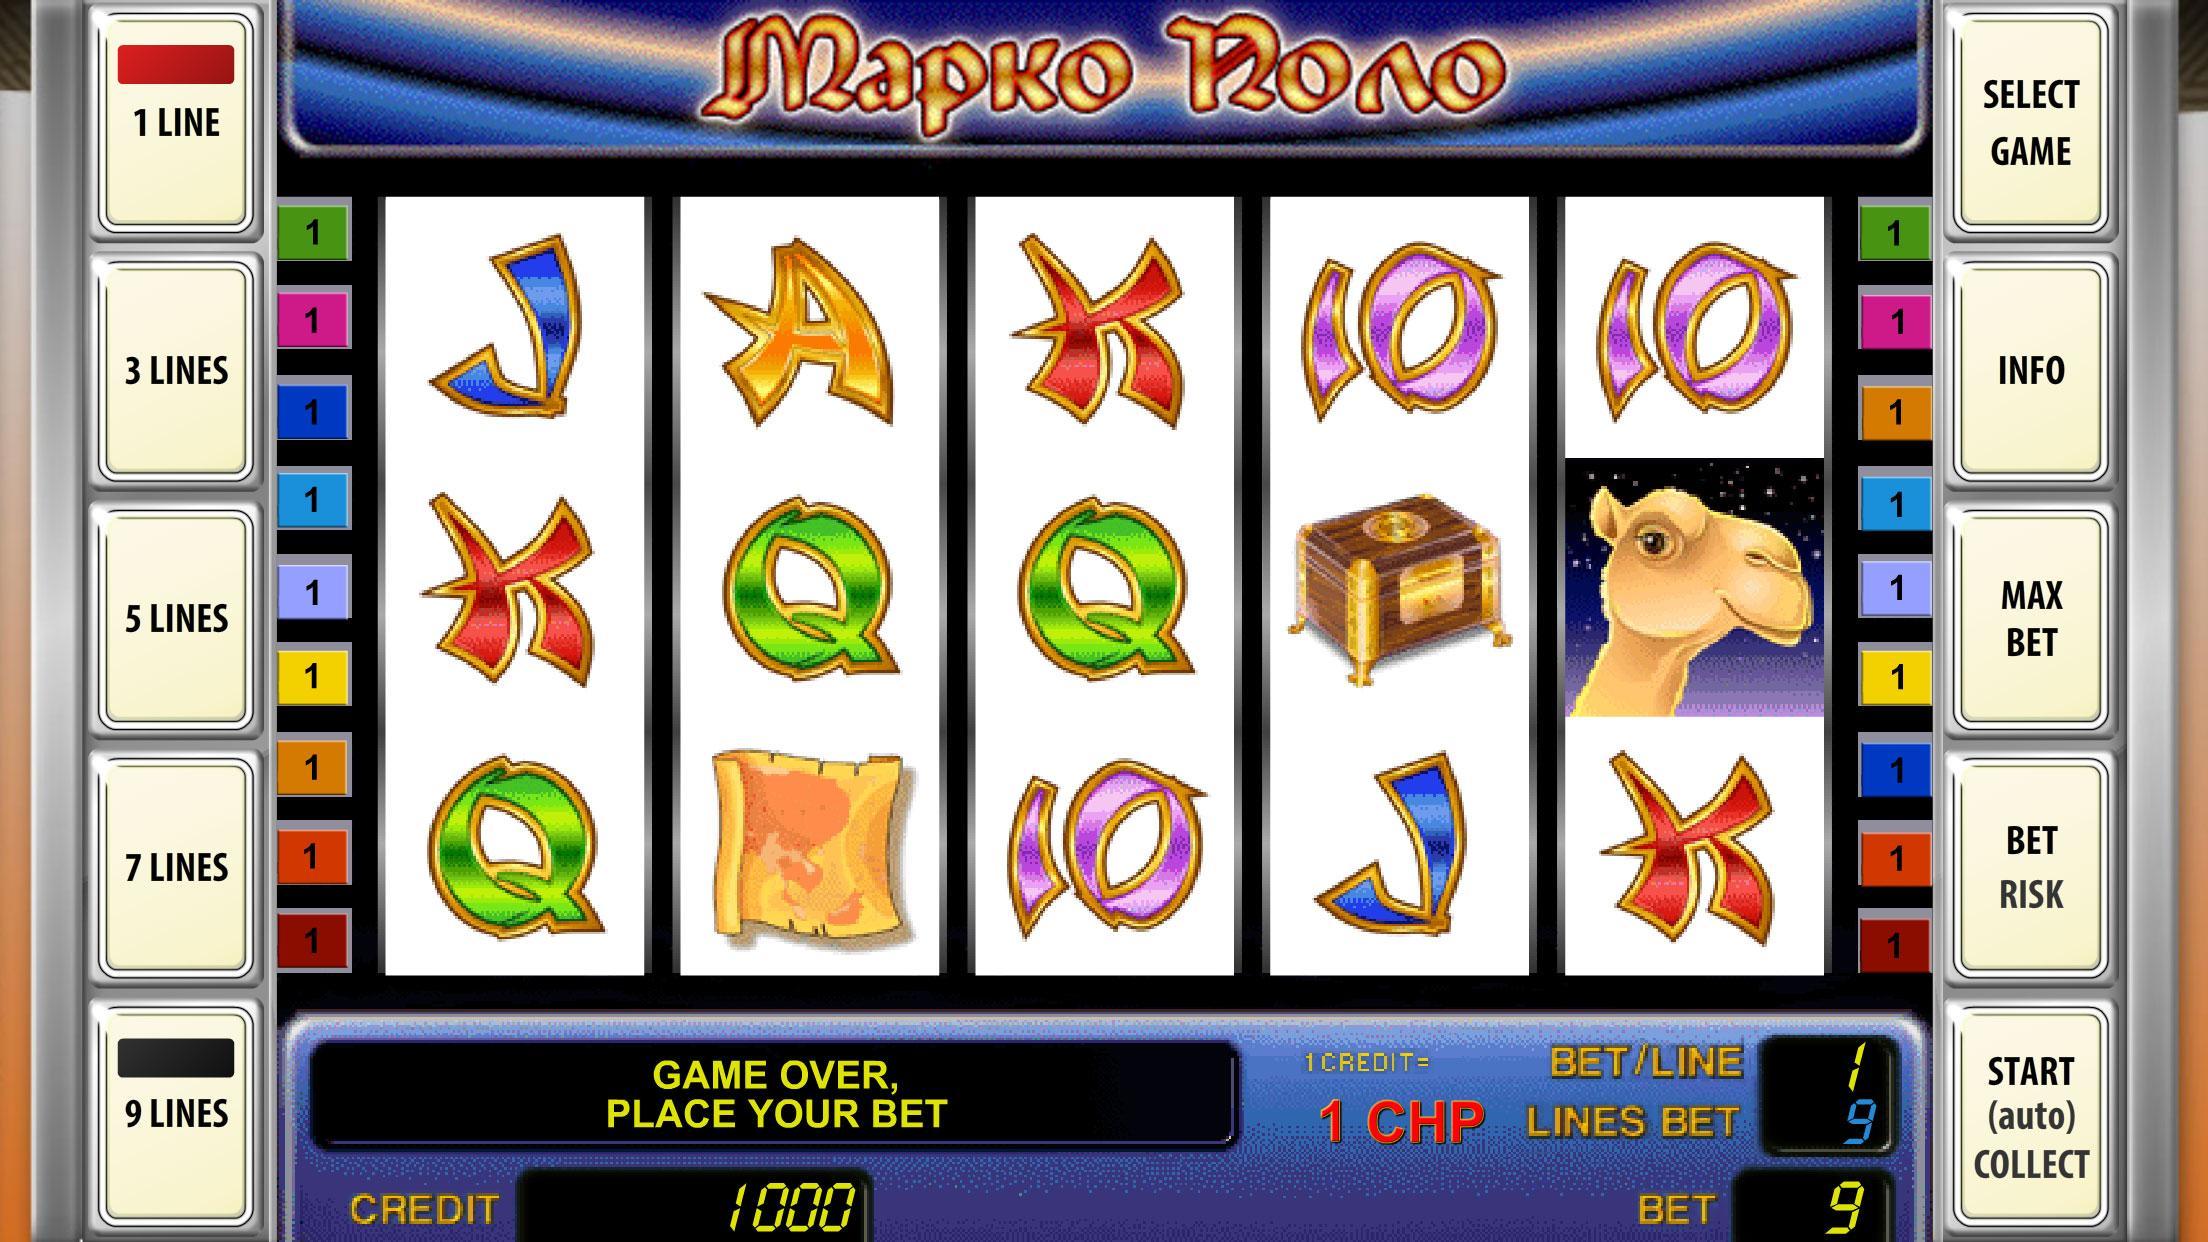 Играть в игровые автоматы бесплатно без регистрации онлайн адмирал spin city casino бездепозитный бонус 700